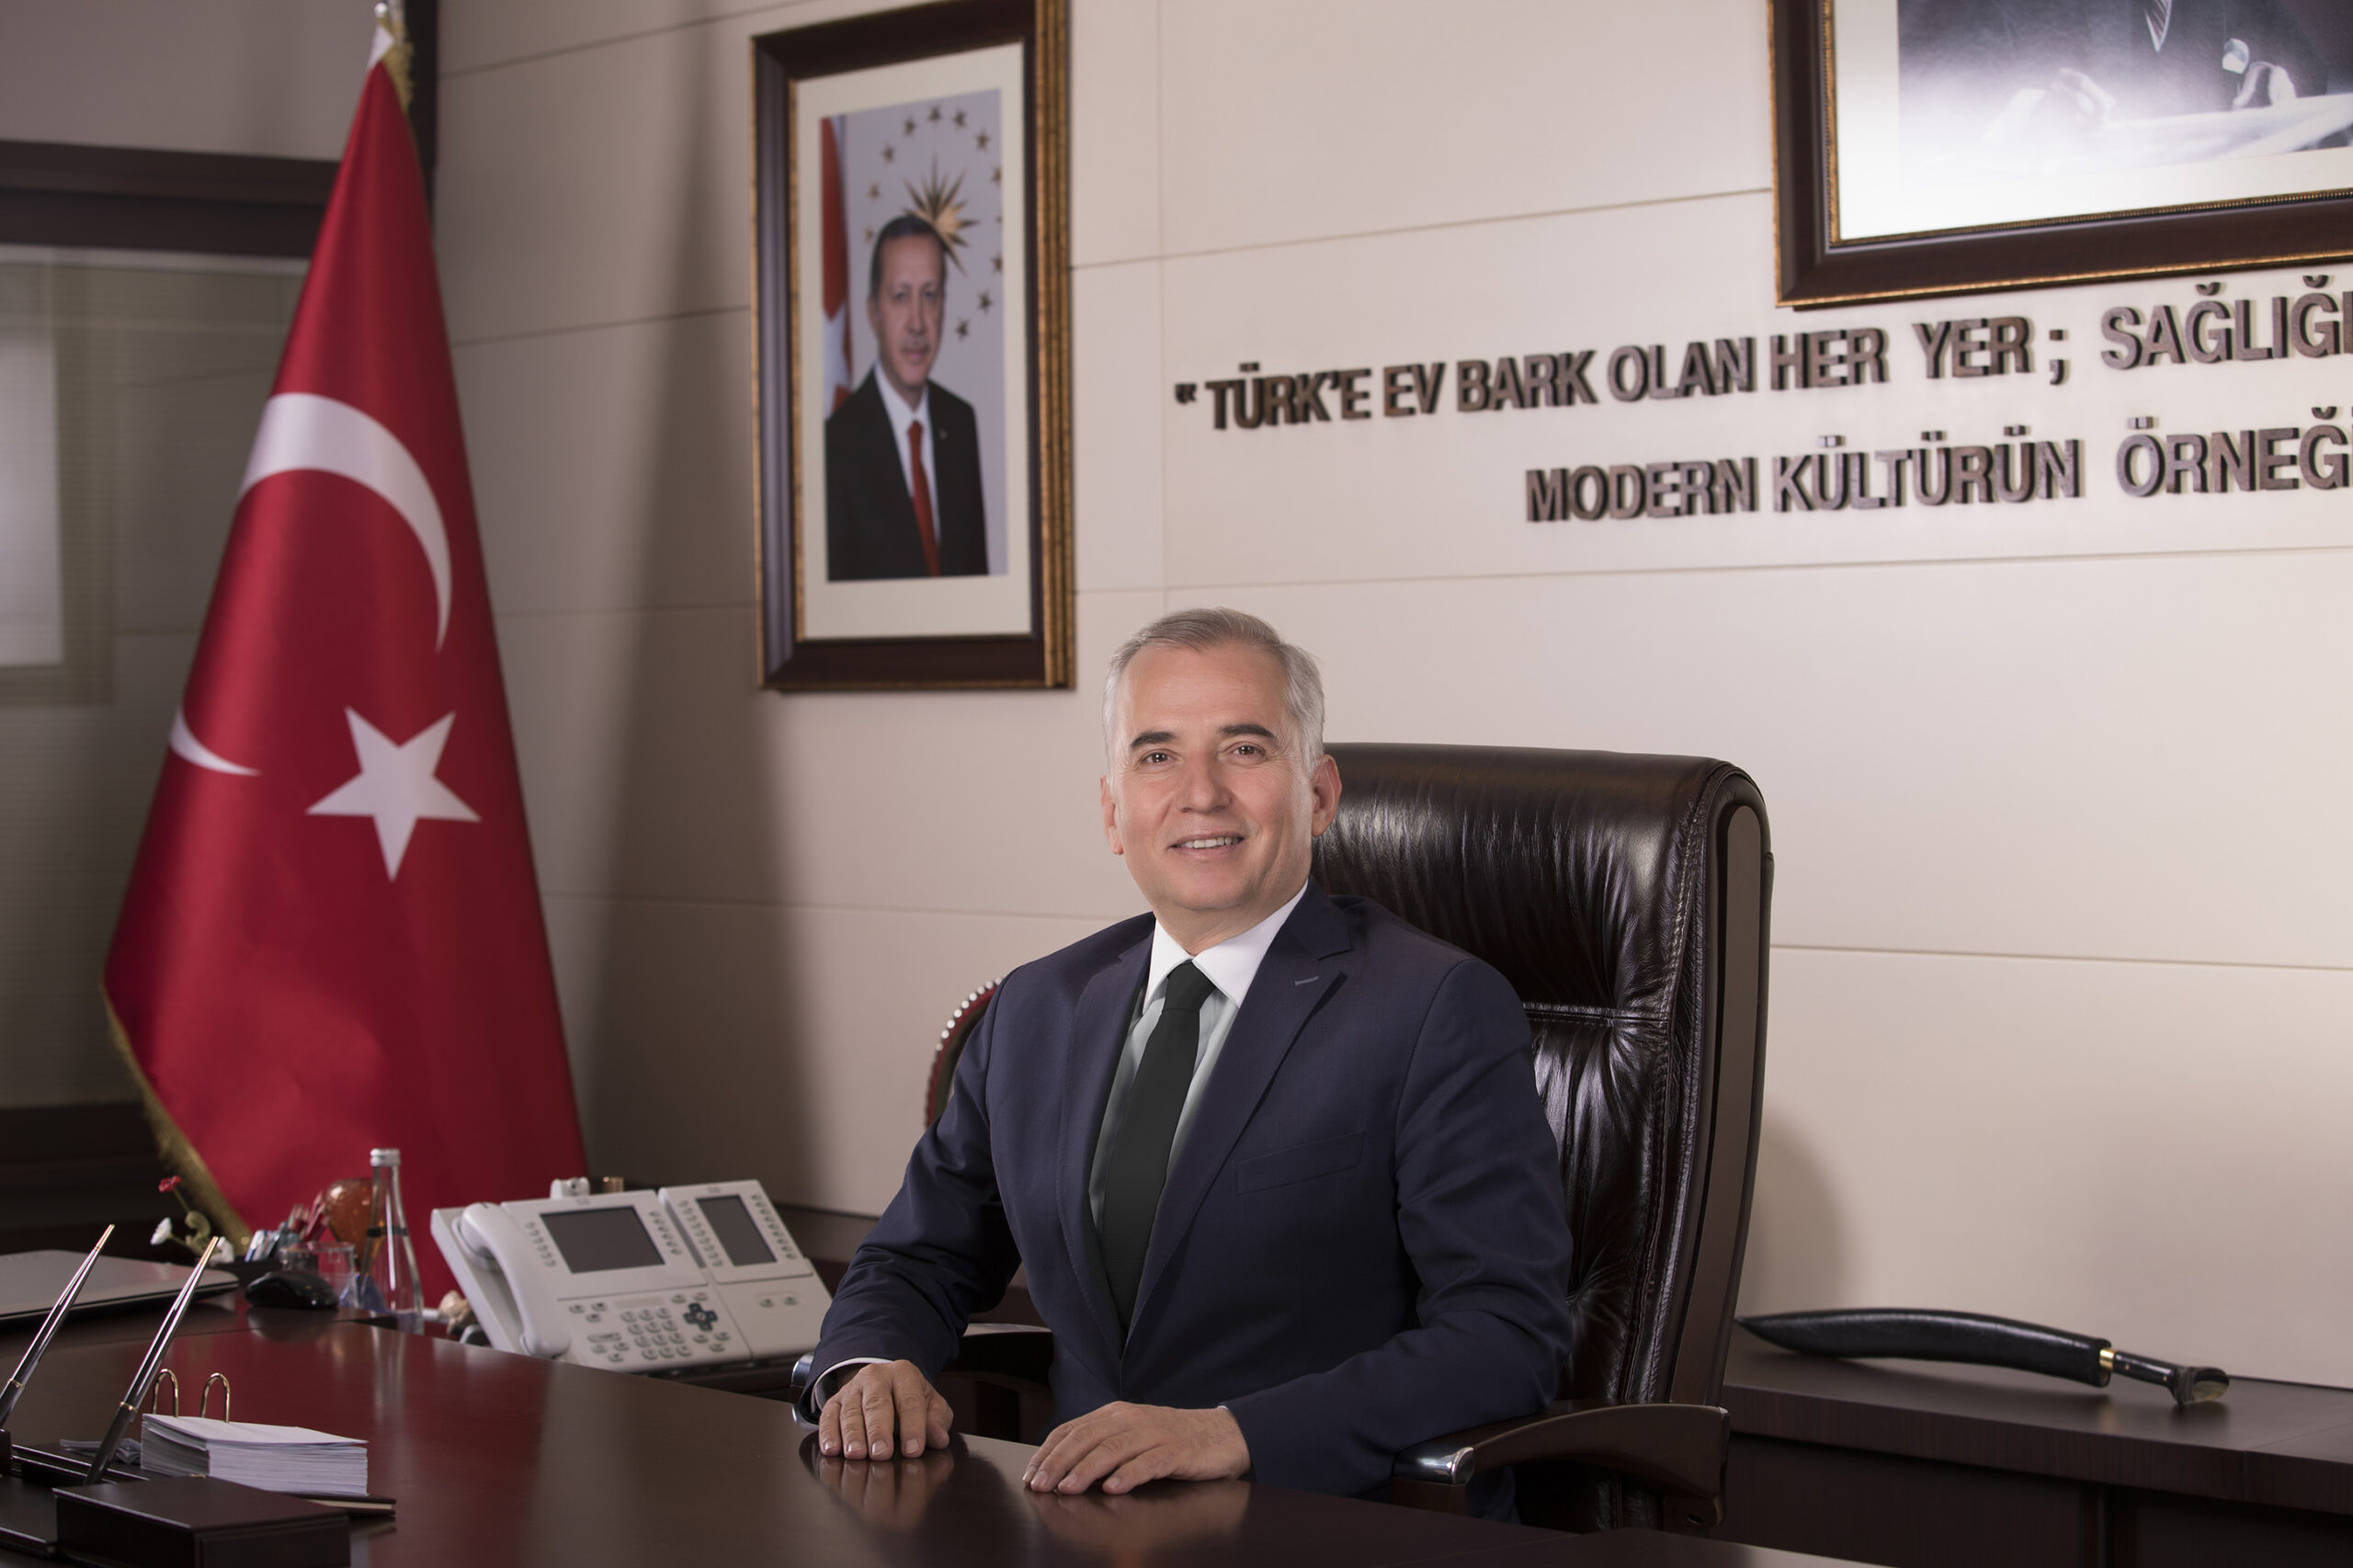 Denizli Buyuksehir Belediye Baskani Osman Zolan scaled - Başkan Osman Zolan’dan Miraç Kandili mesajı